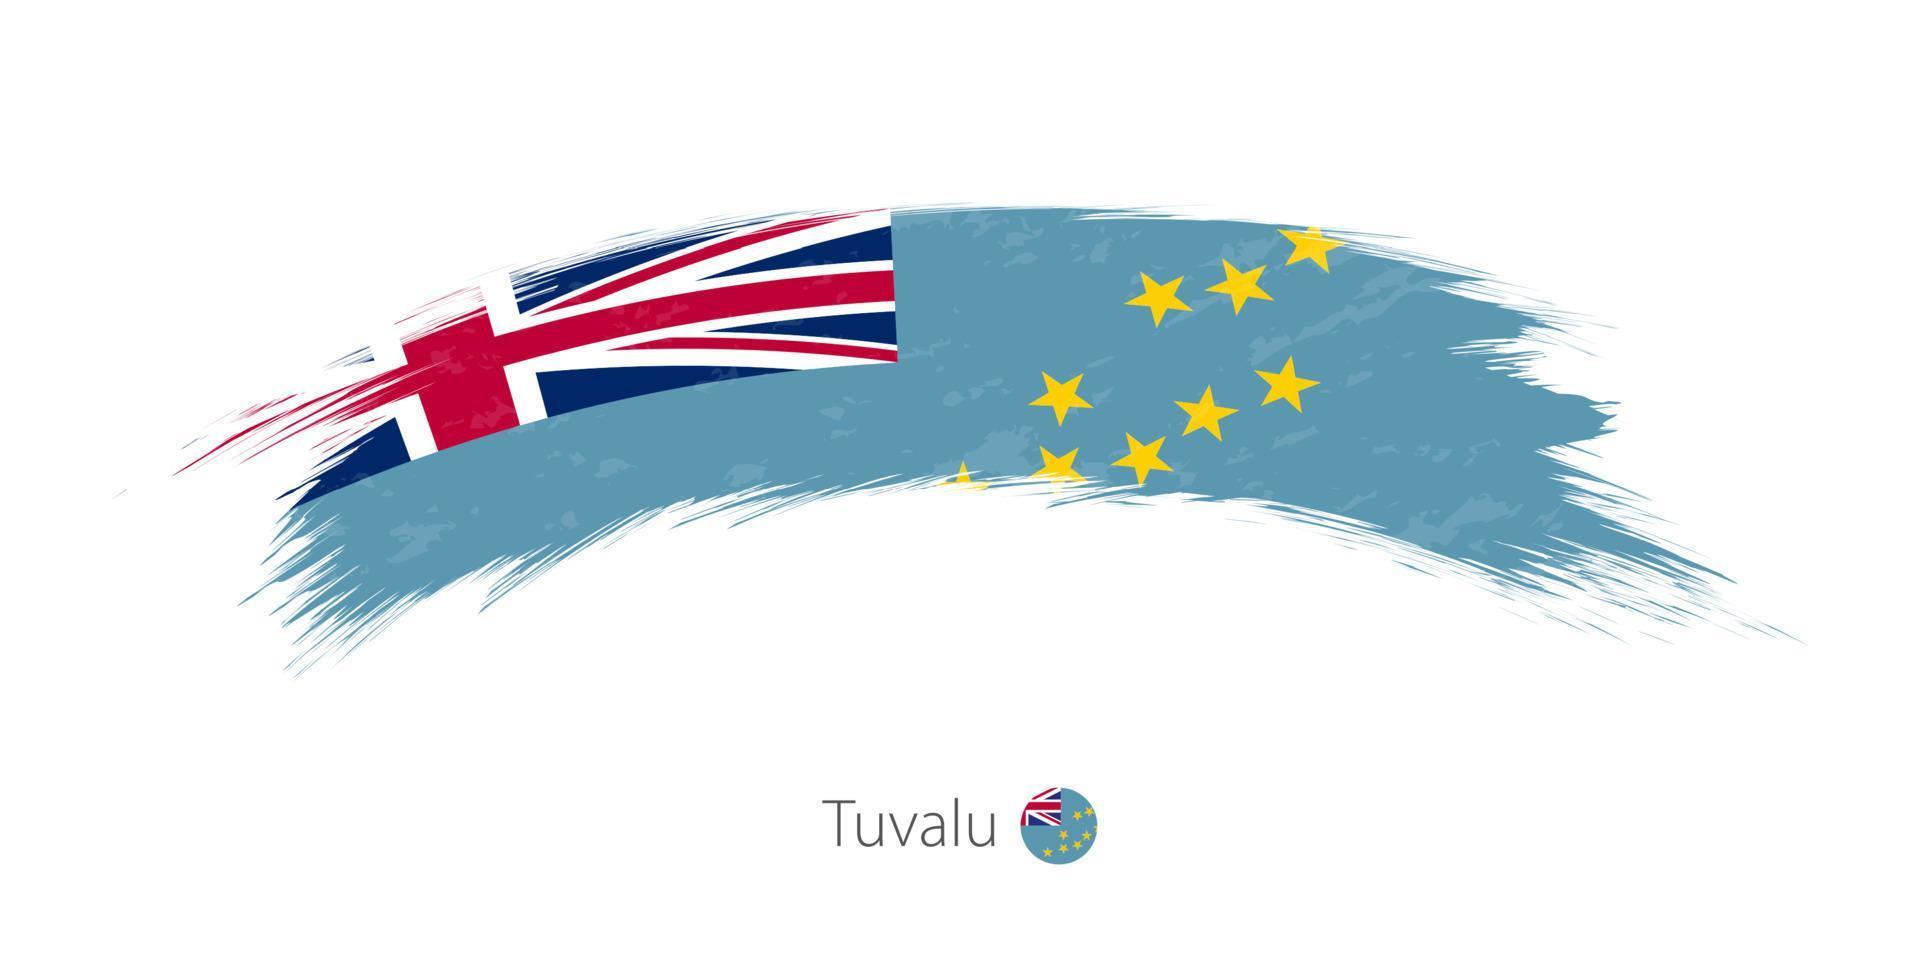 drapeau de tuvalu en coup de pinceau grunge arrondi. vecteur